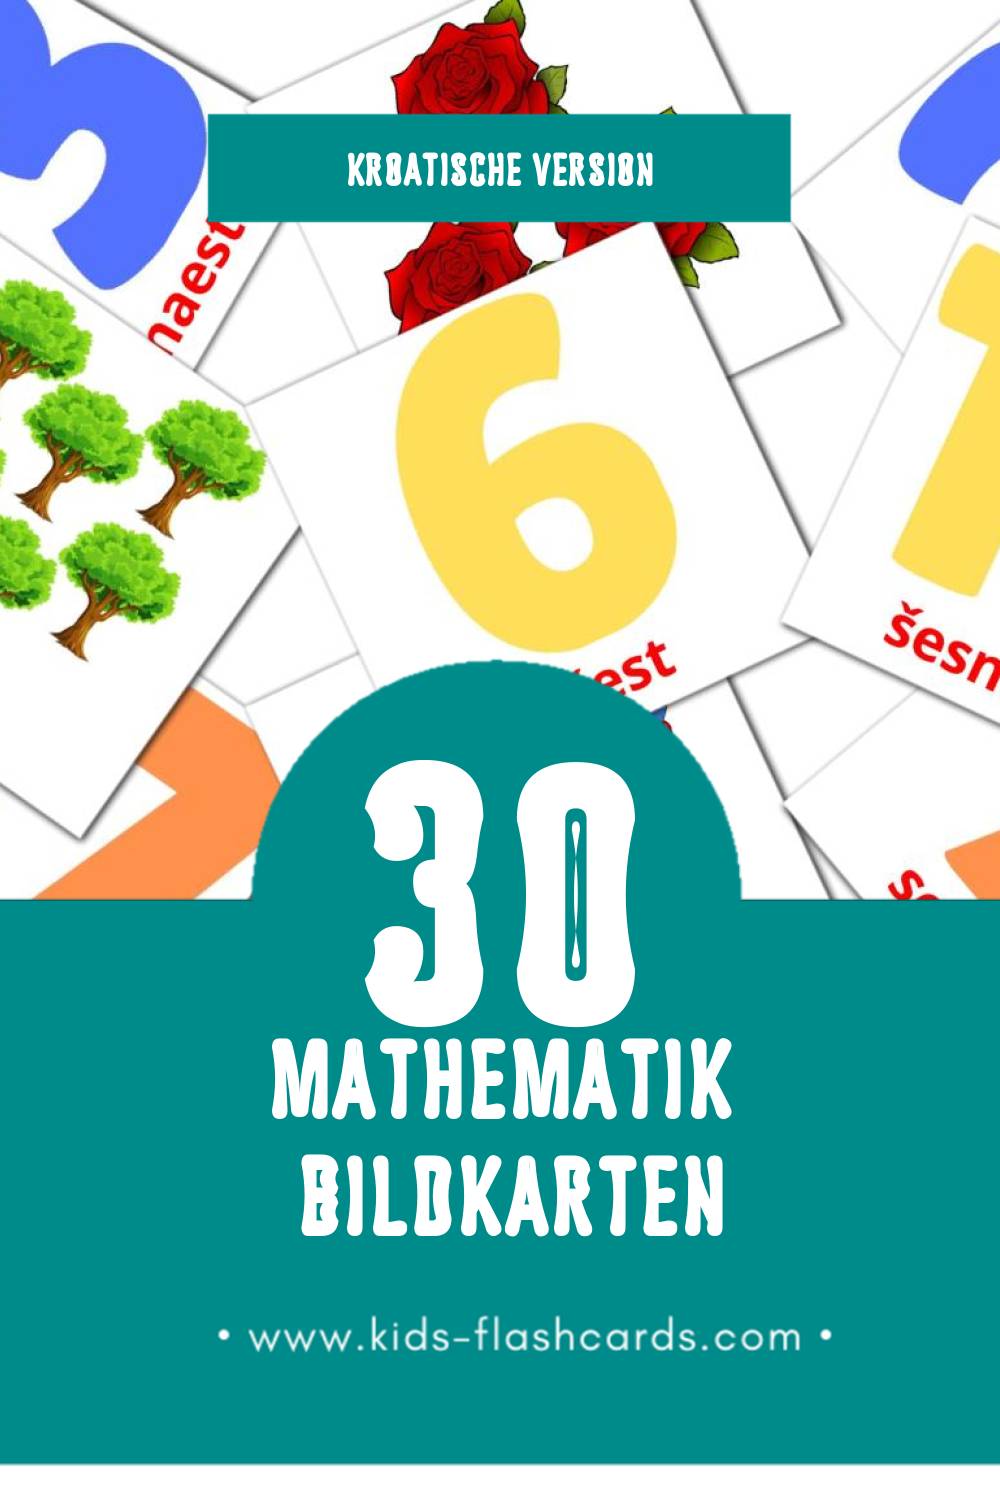 Visual Matematika Flashcards für Kleinkinder (30 Karten in Kroatisch)